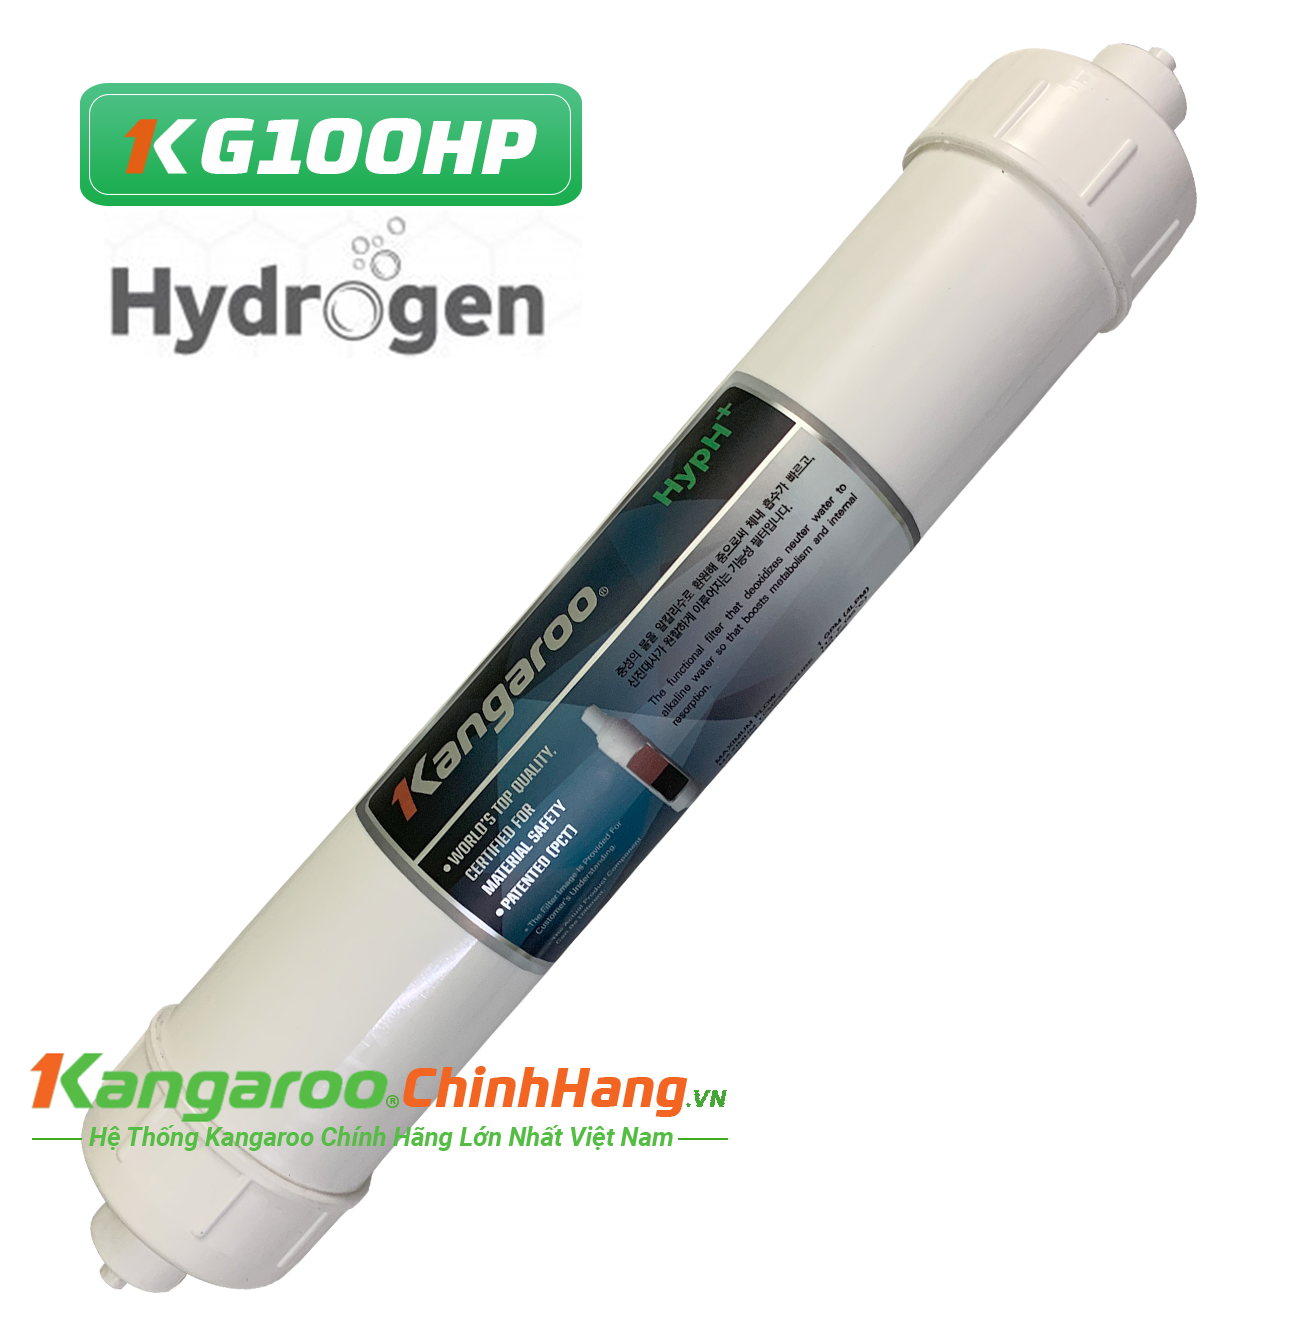 Lõi lọc nước Kangaroo Hydrogen số 7 HypH + (HP)